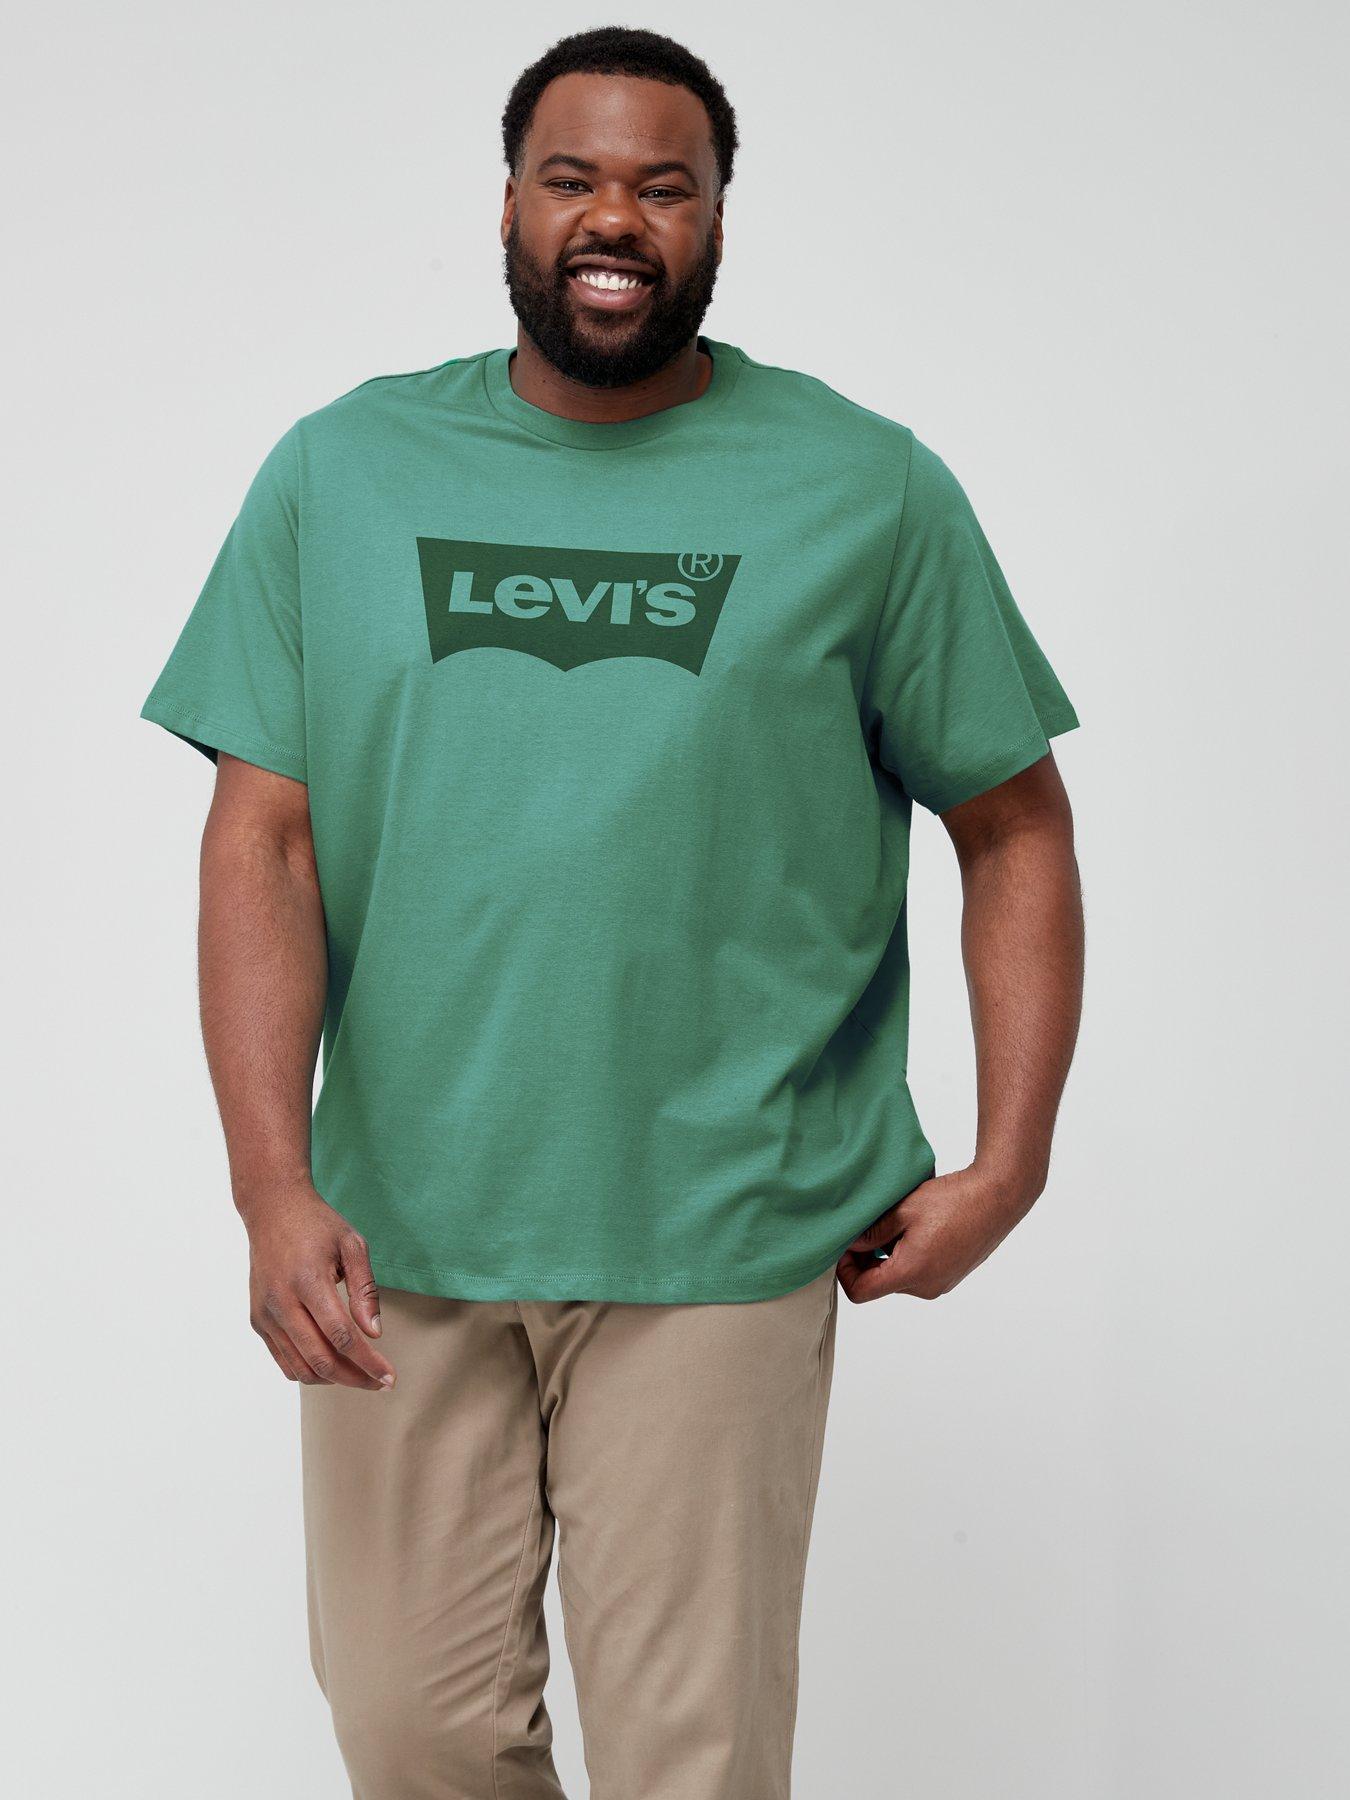 Levi's | T-shirts & polos | Men | Very Ireland